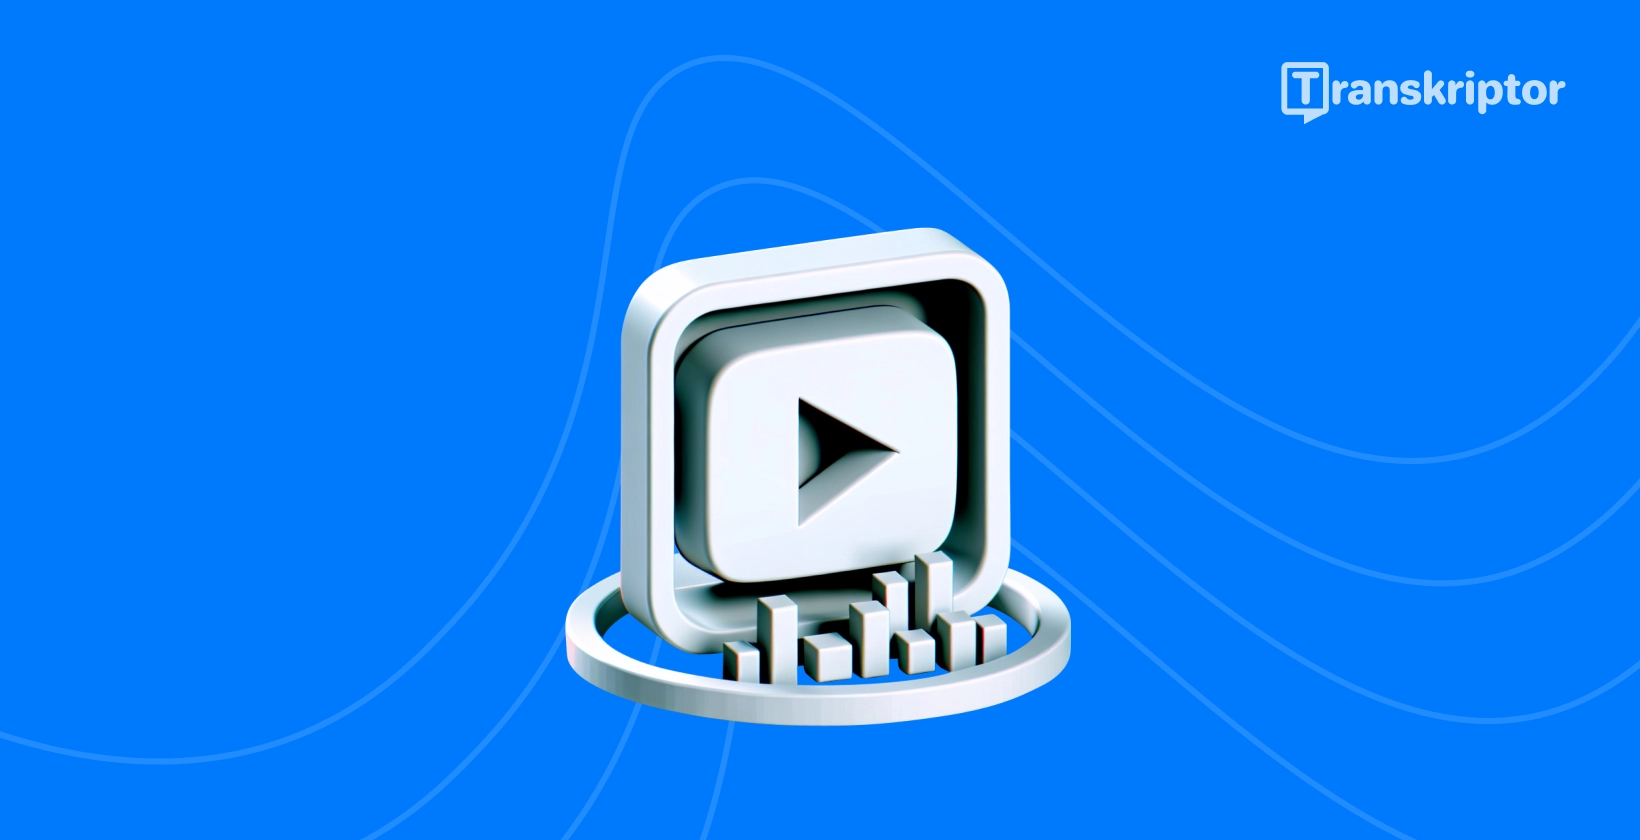 Gumb za reprodukciju i vizualni prikaz transkripcije koji ilustriraju metode učinkovitog prepisivanja YouTube videozapisa.